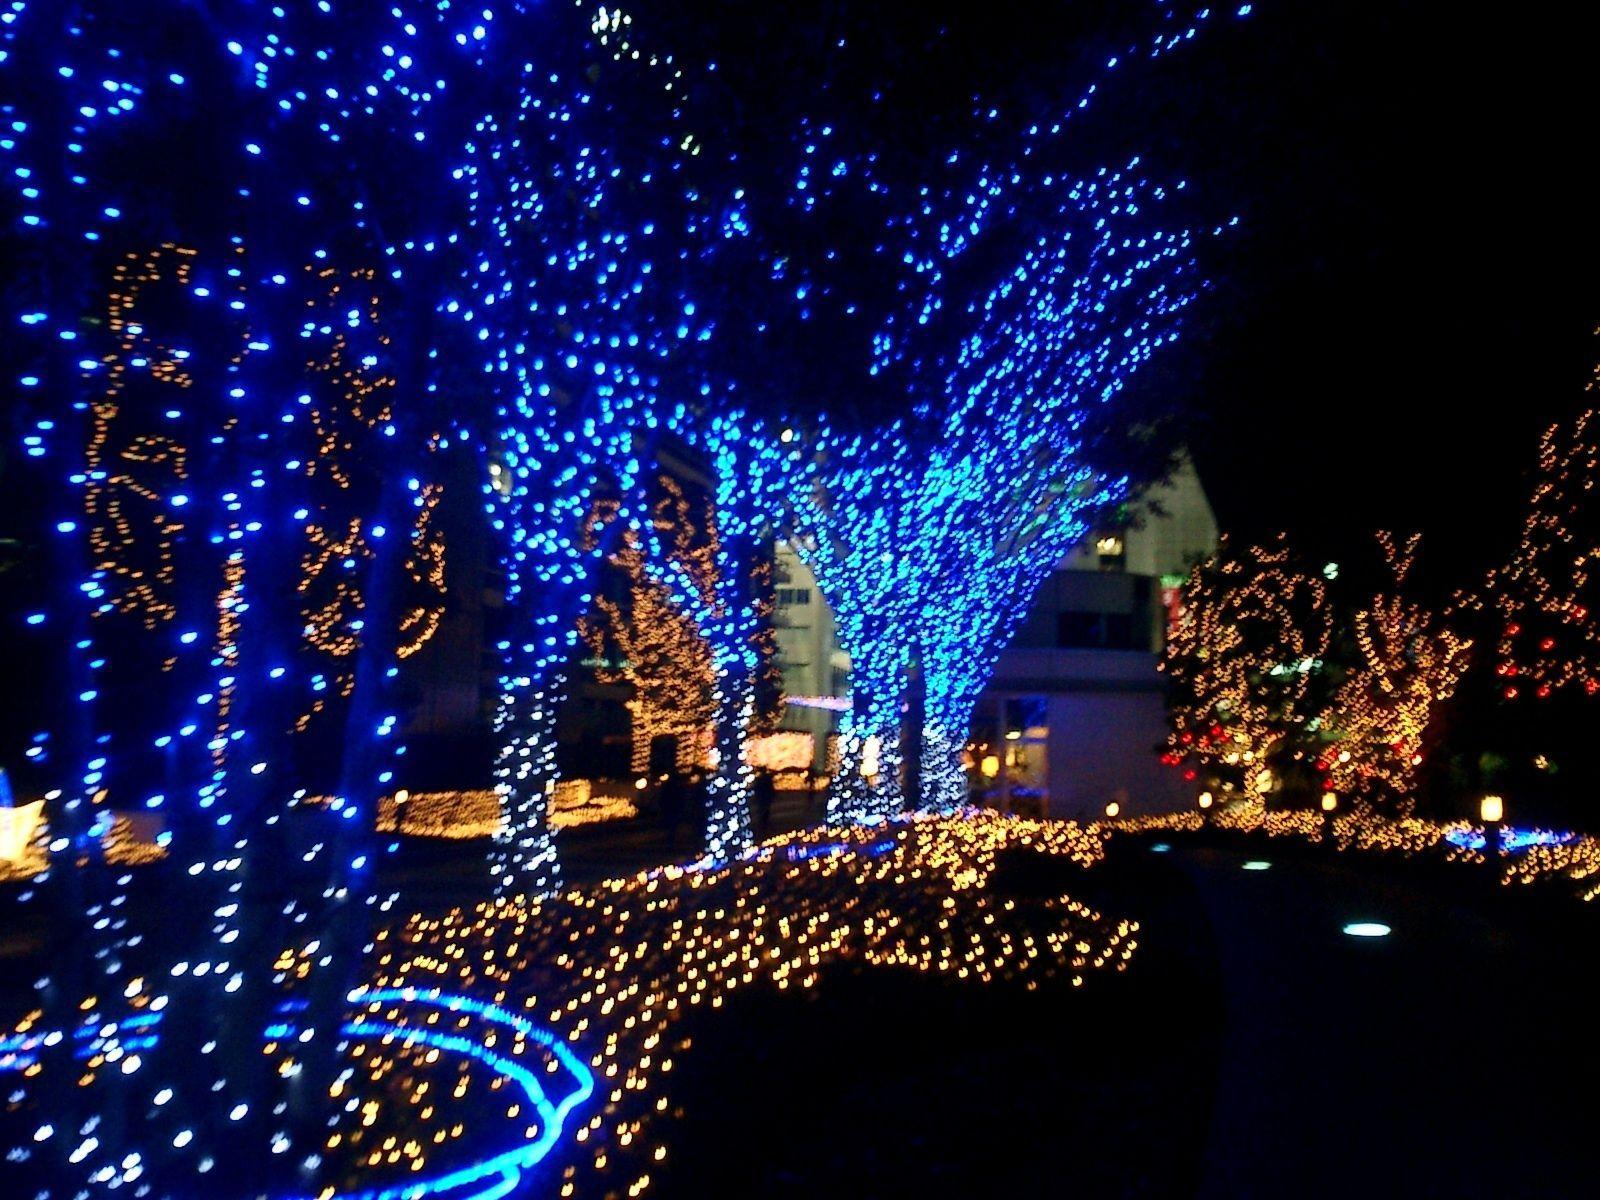 Christmas lights ideas. christmas lights, lights, xmas lights